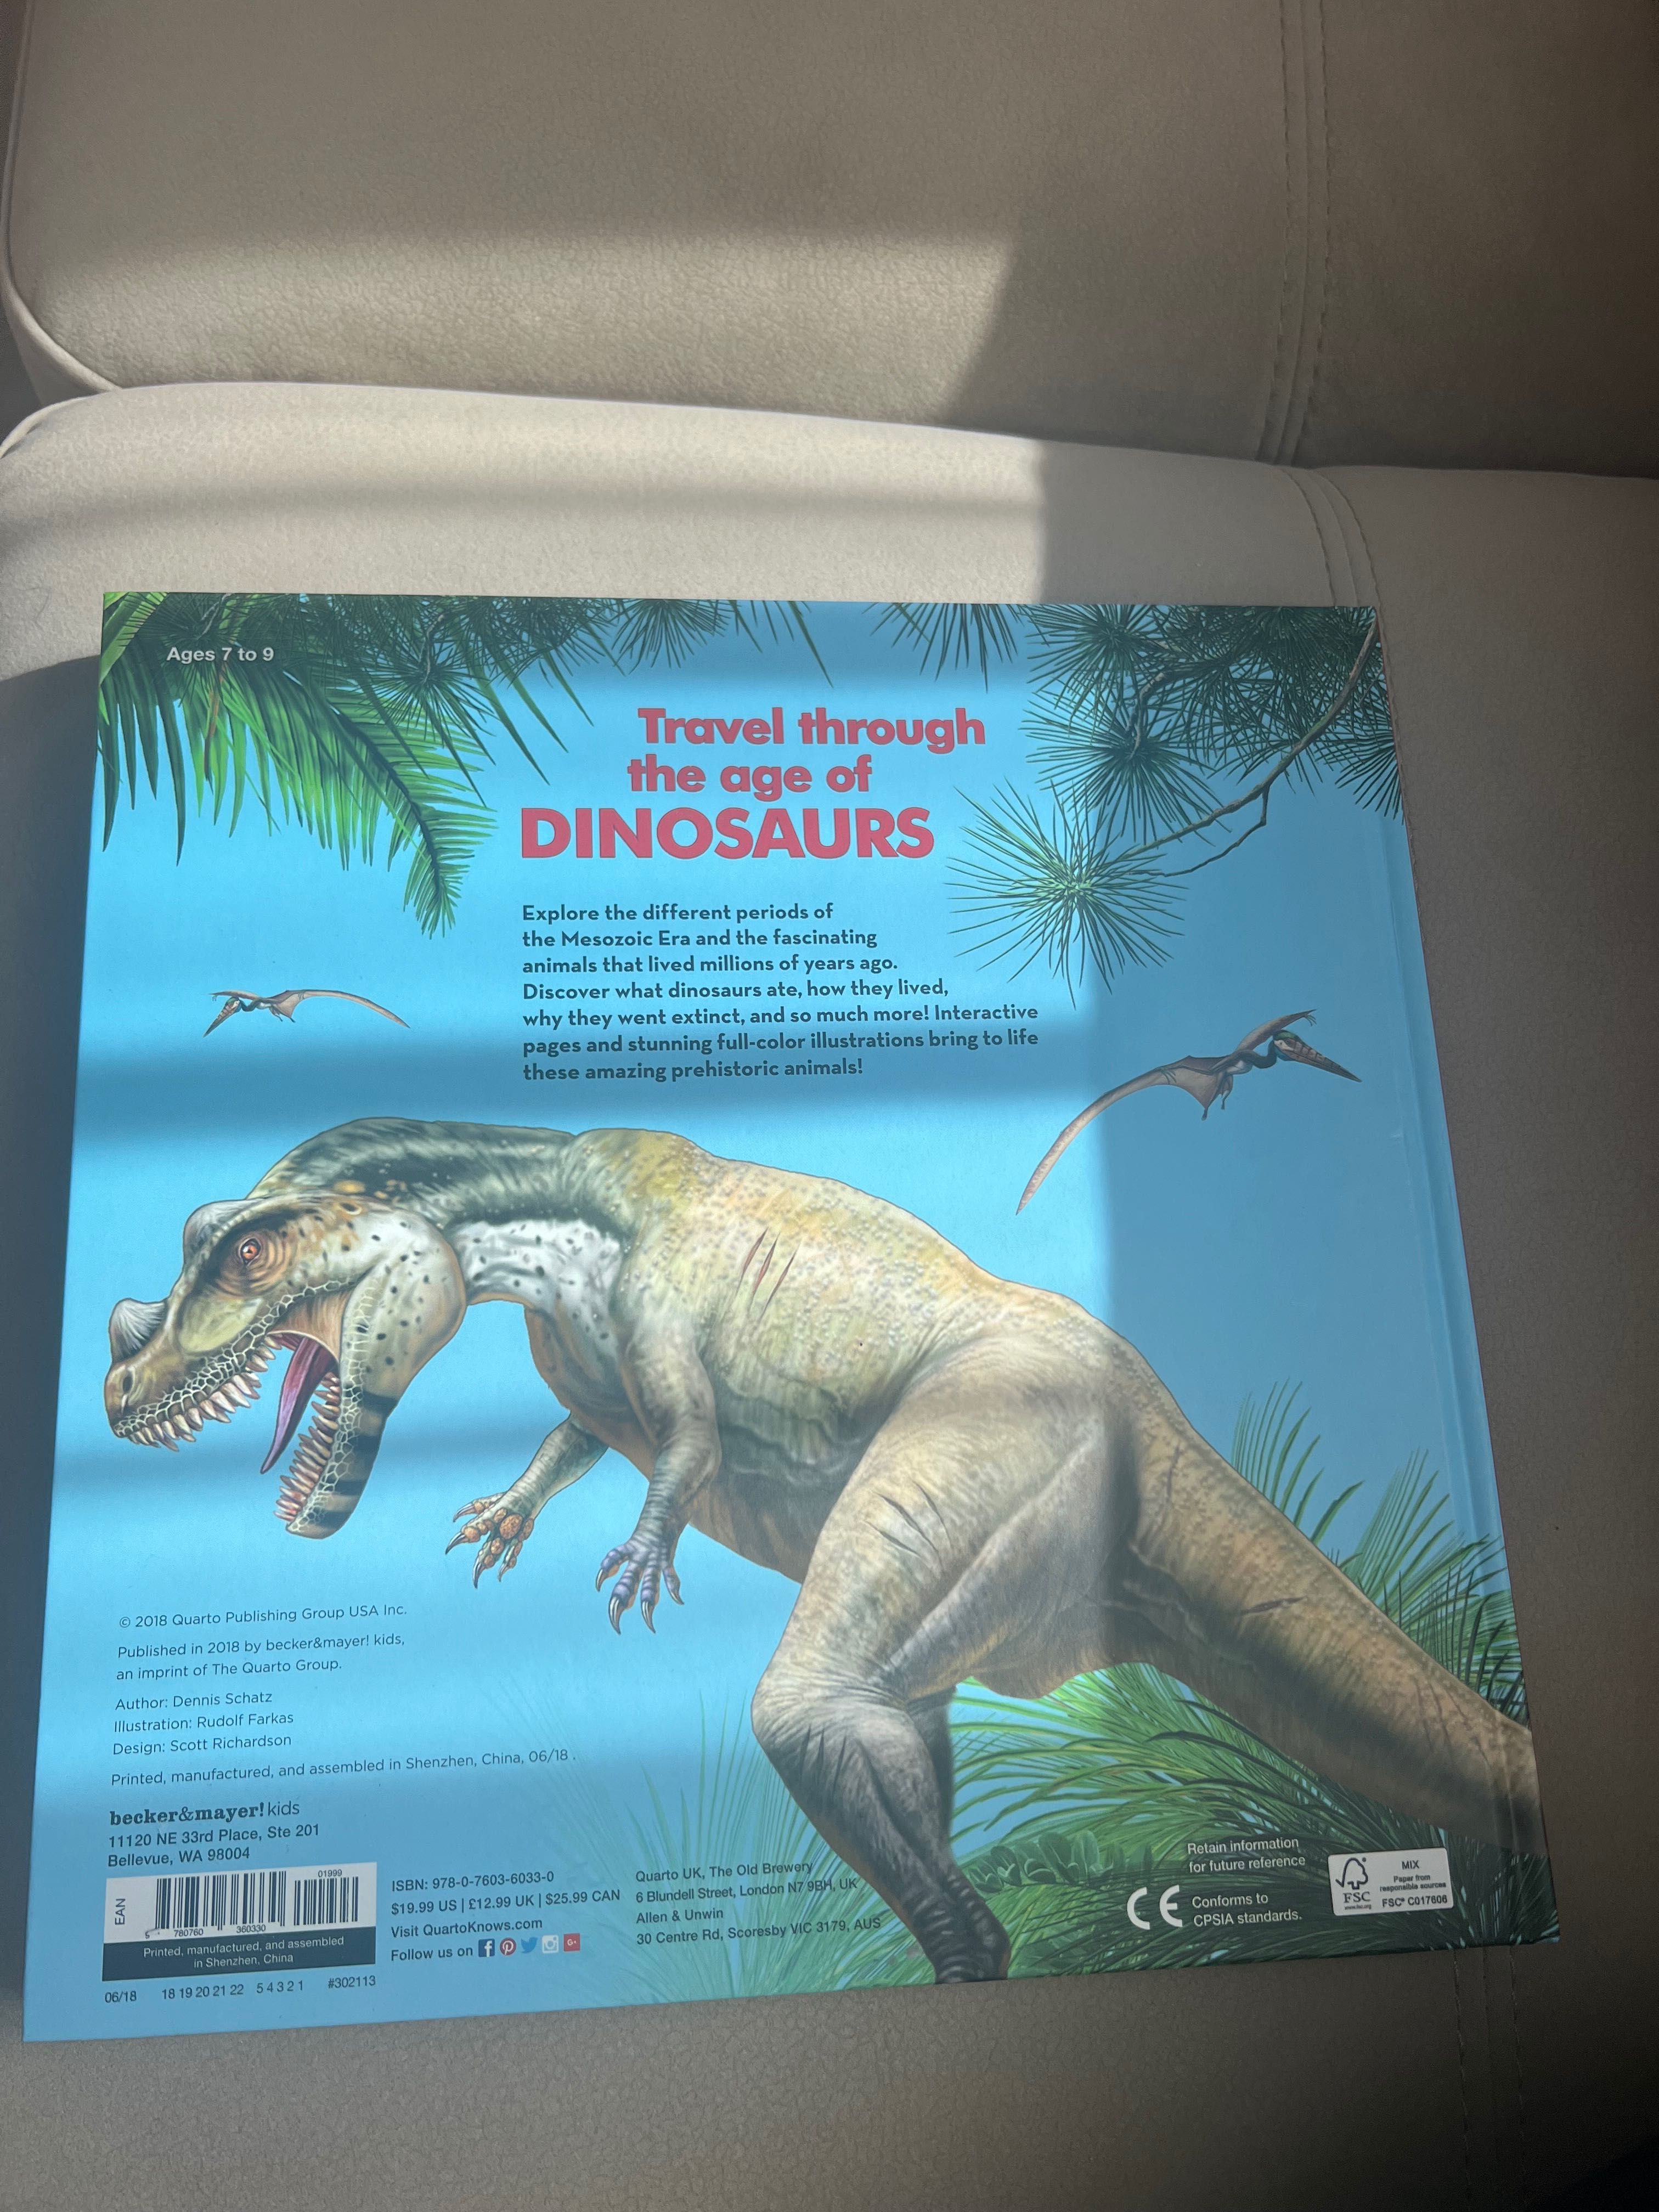 Książka po angielsku: History Uncovered: Dinosaurs